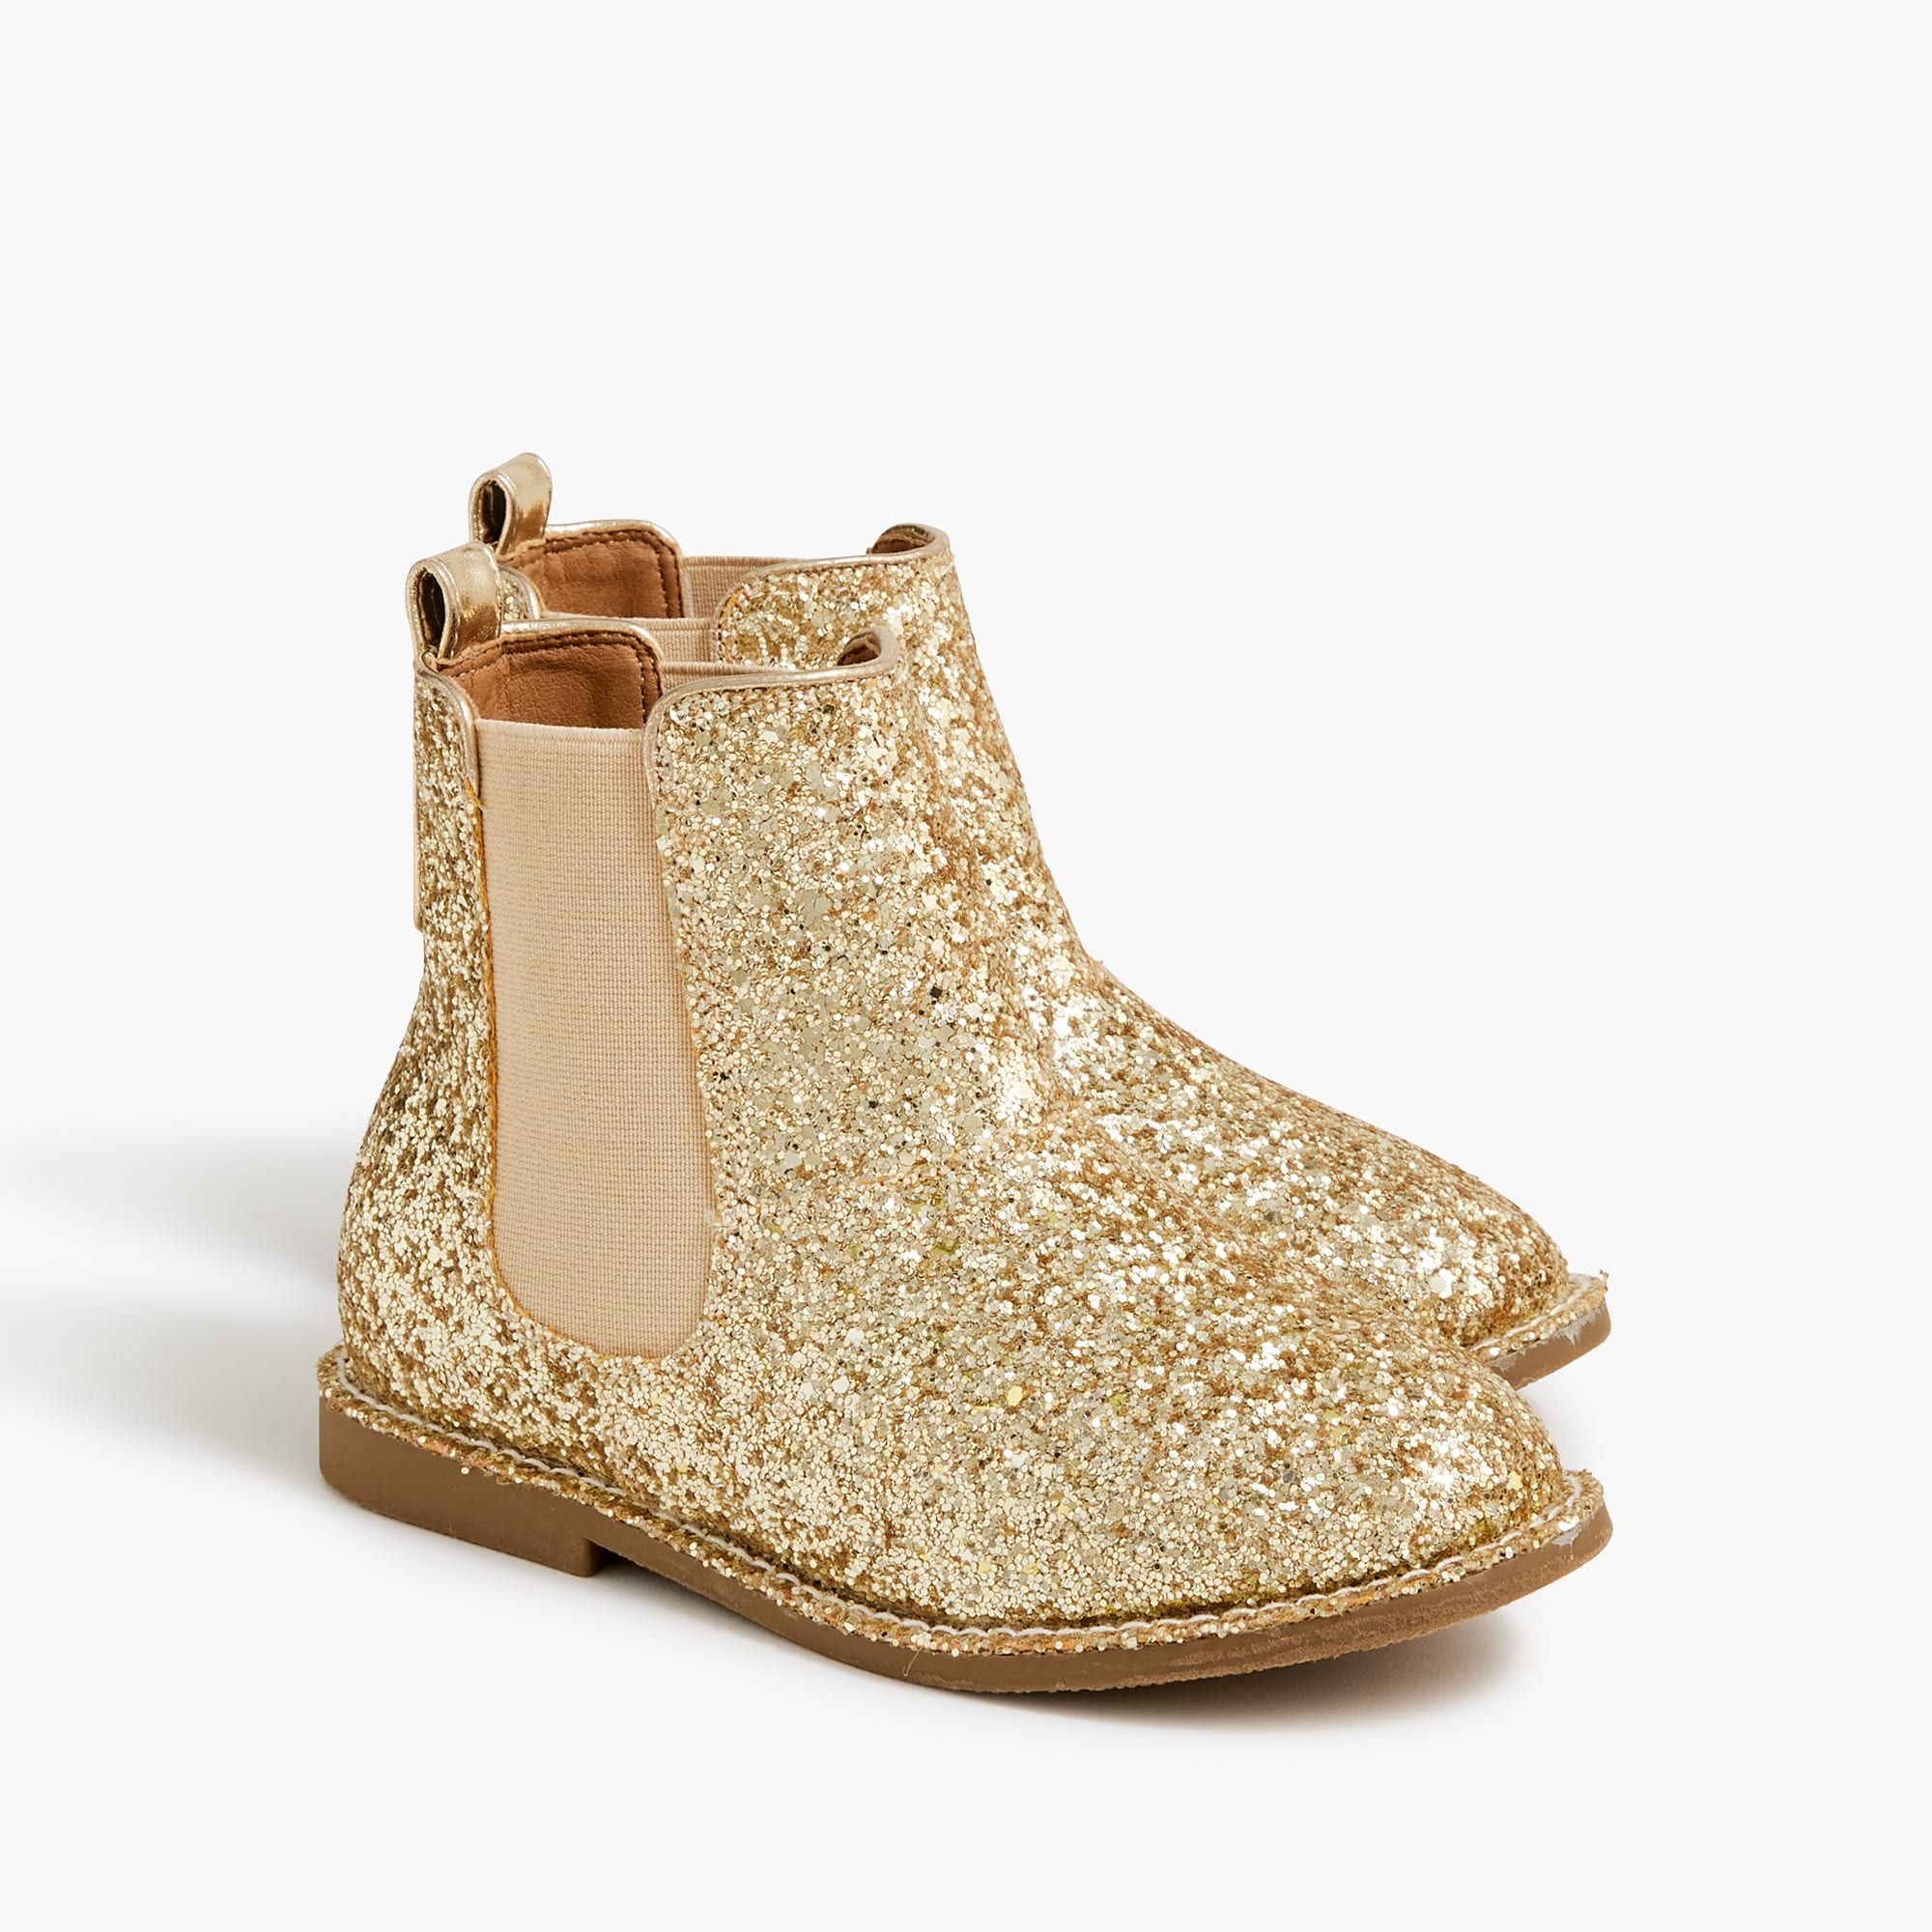 Girls' glitter boots